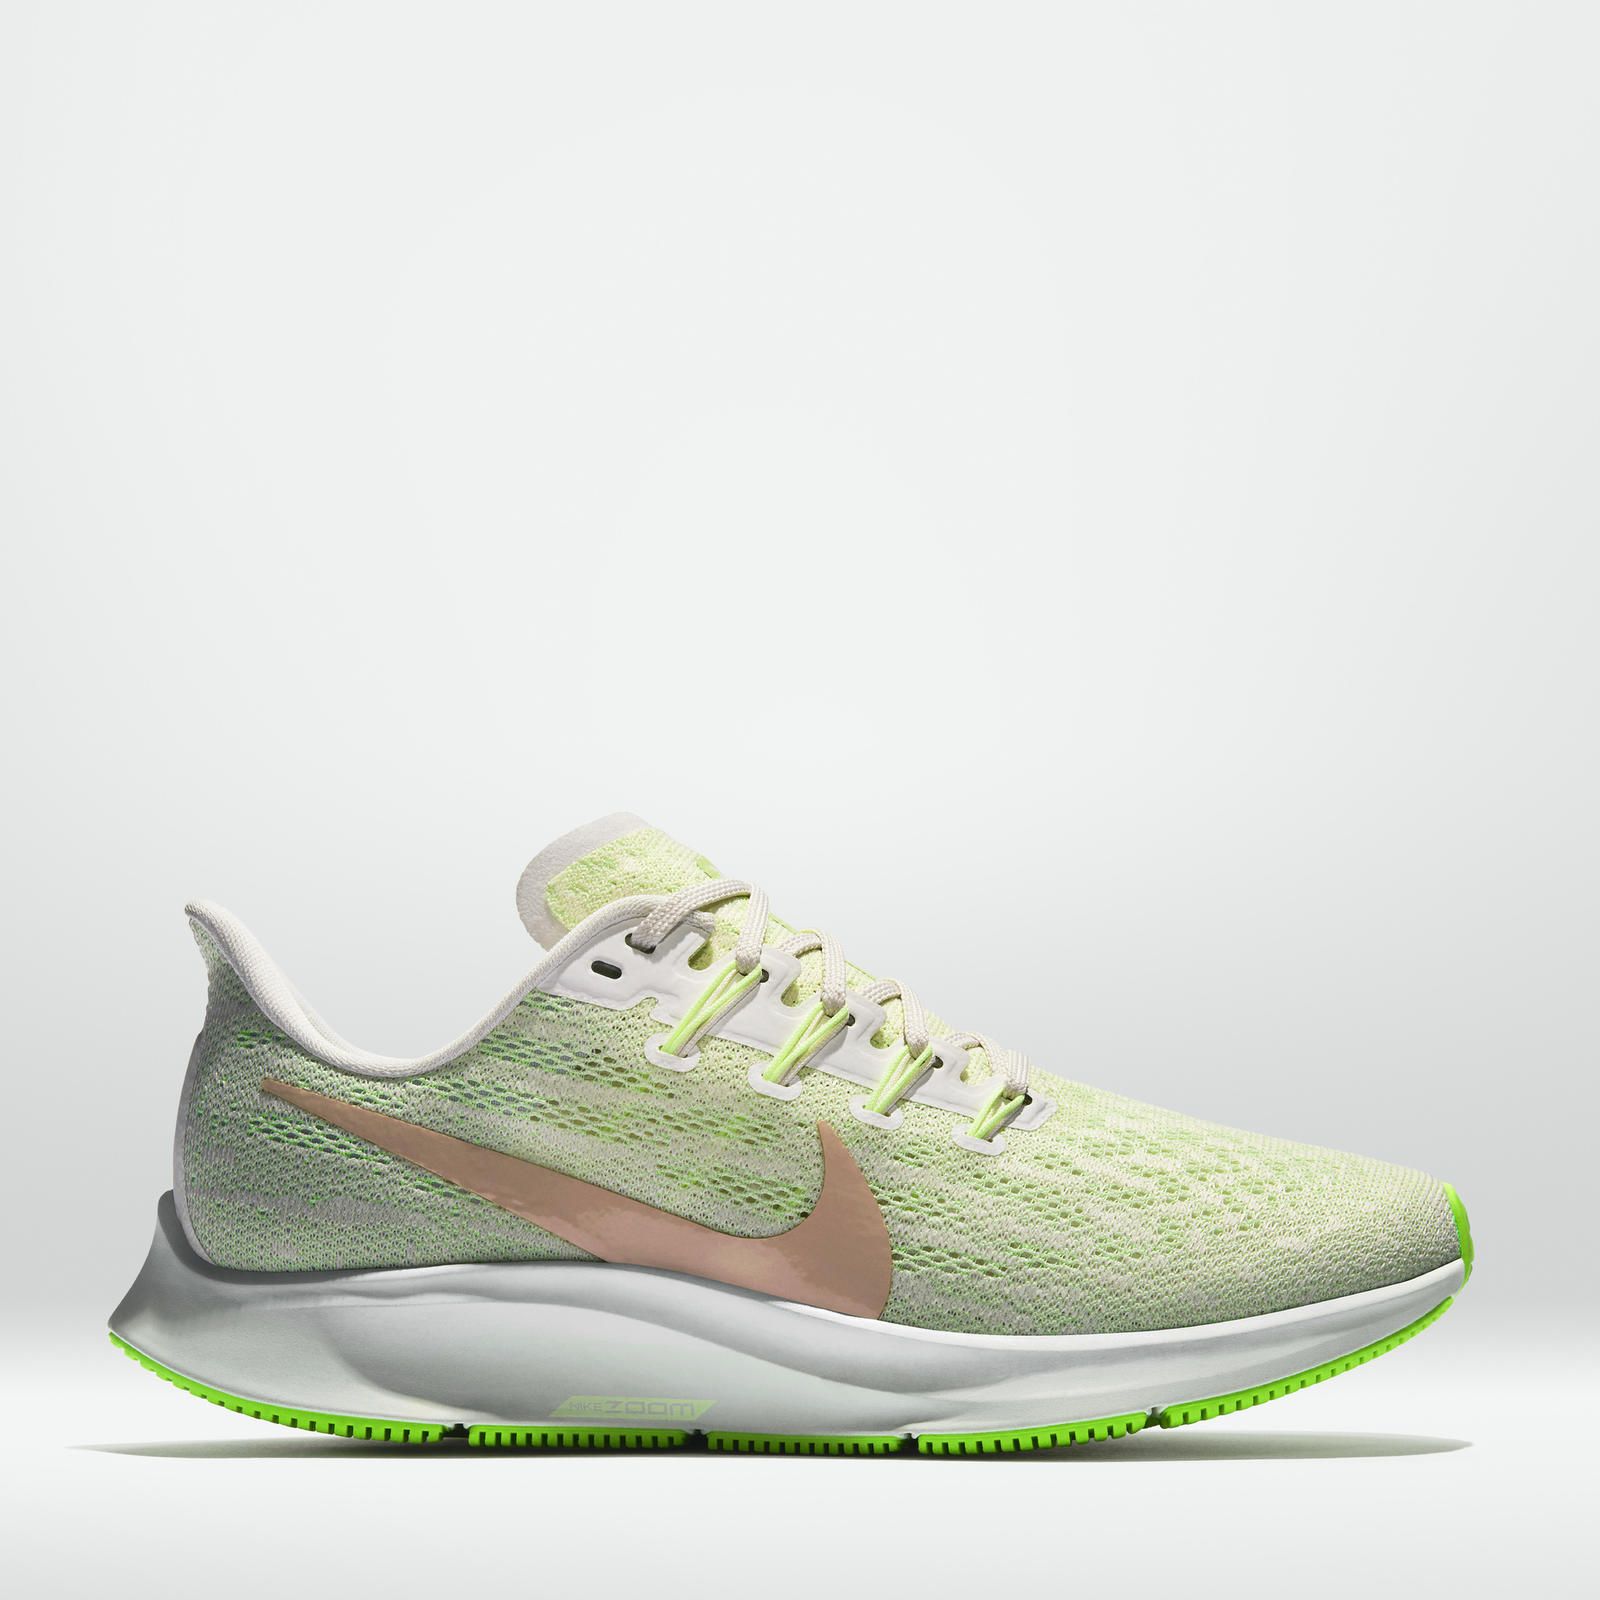 Nike presenta la serie la familia zapatillas más rápidas practicar running